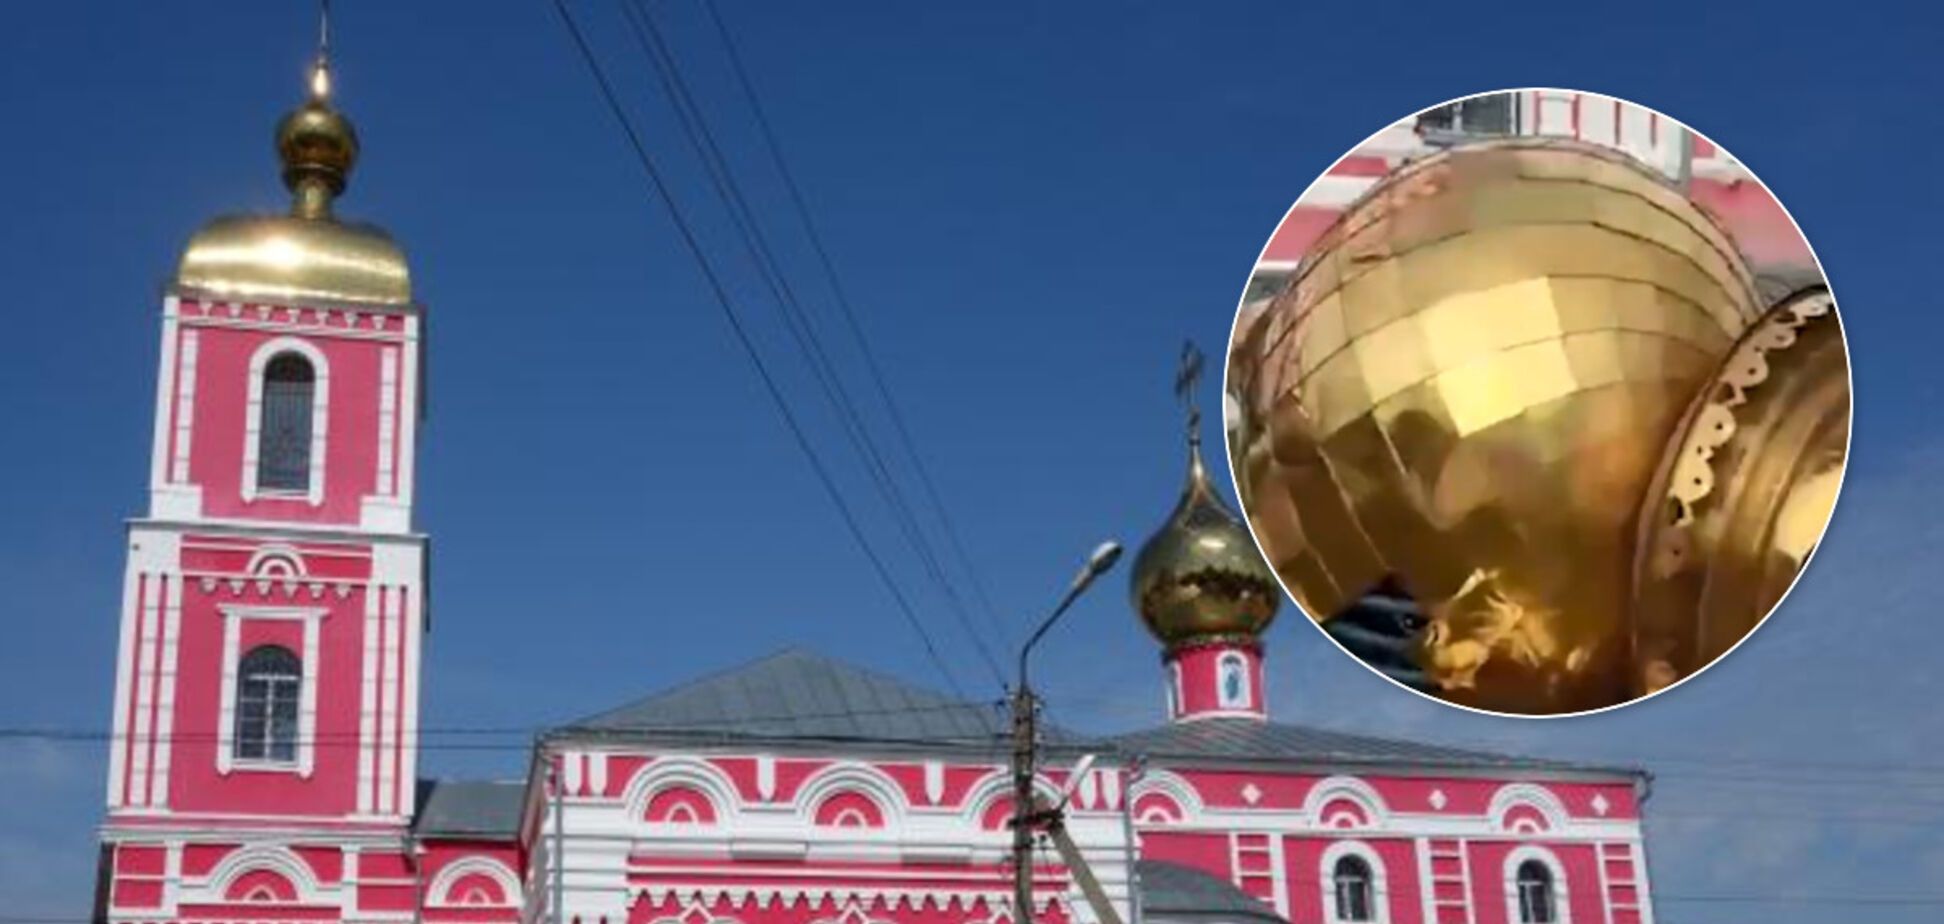 'Це знак для нас, безбожників!' У Росії впав купол храму: відео